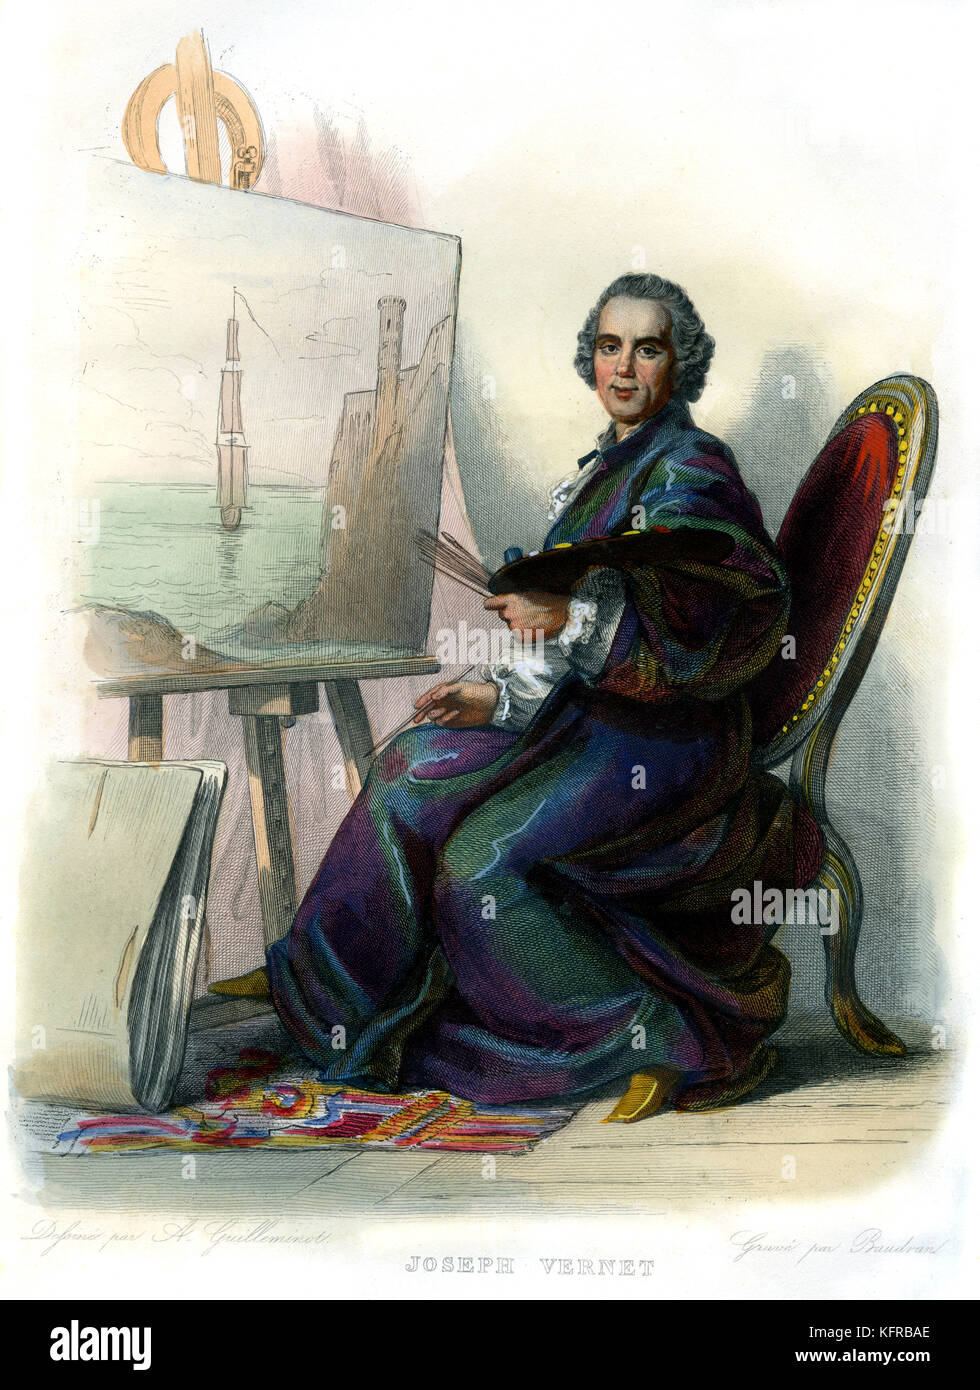 Claude-Joseph Vernet. Französische Maler. 1714 - 1789. Kupferstich von E.-L. Baudran. Stockfoto